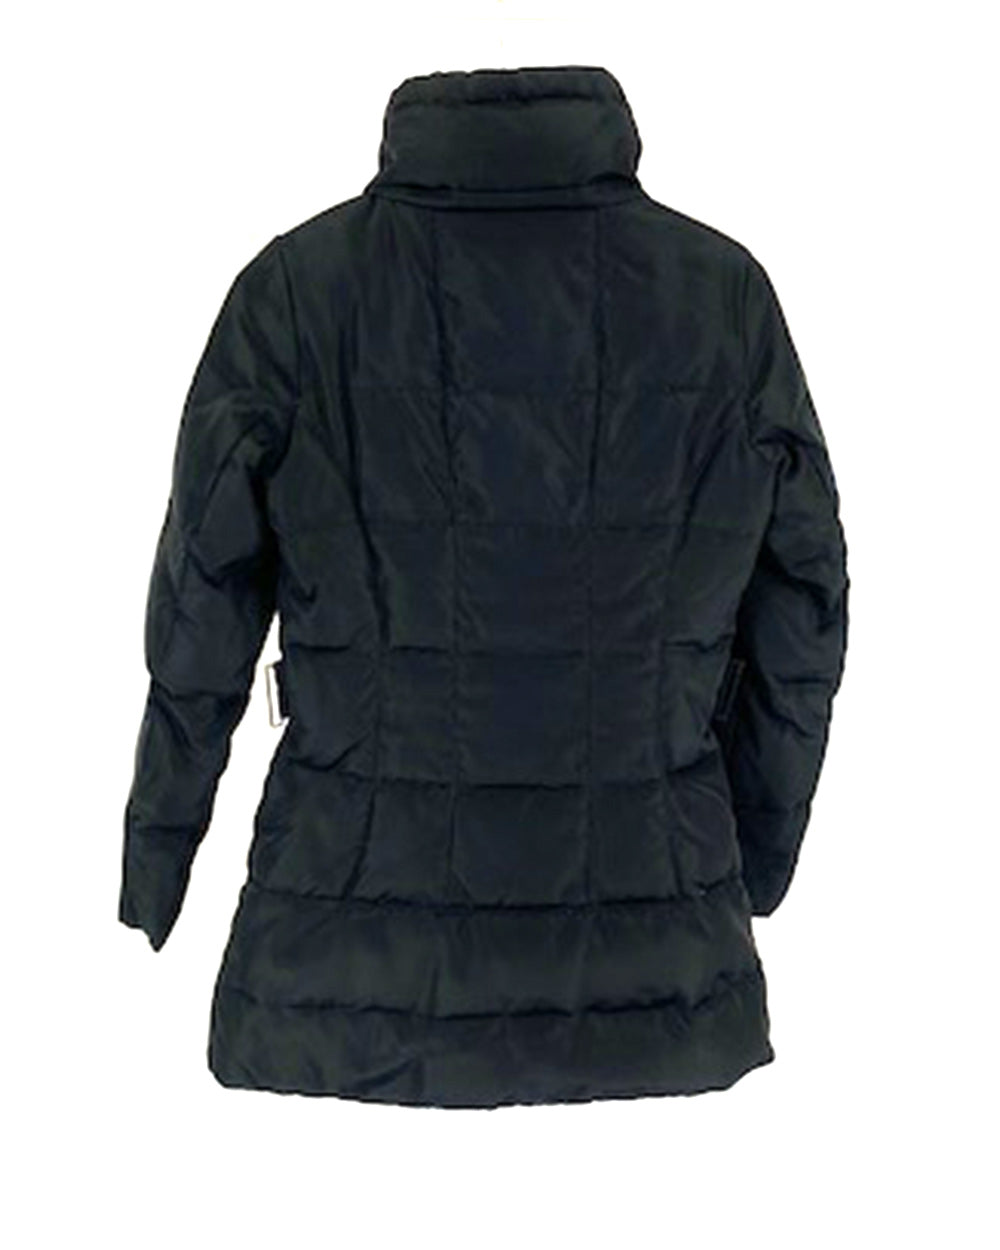 Zara Black Padded Coat Euro S